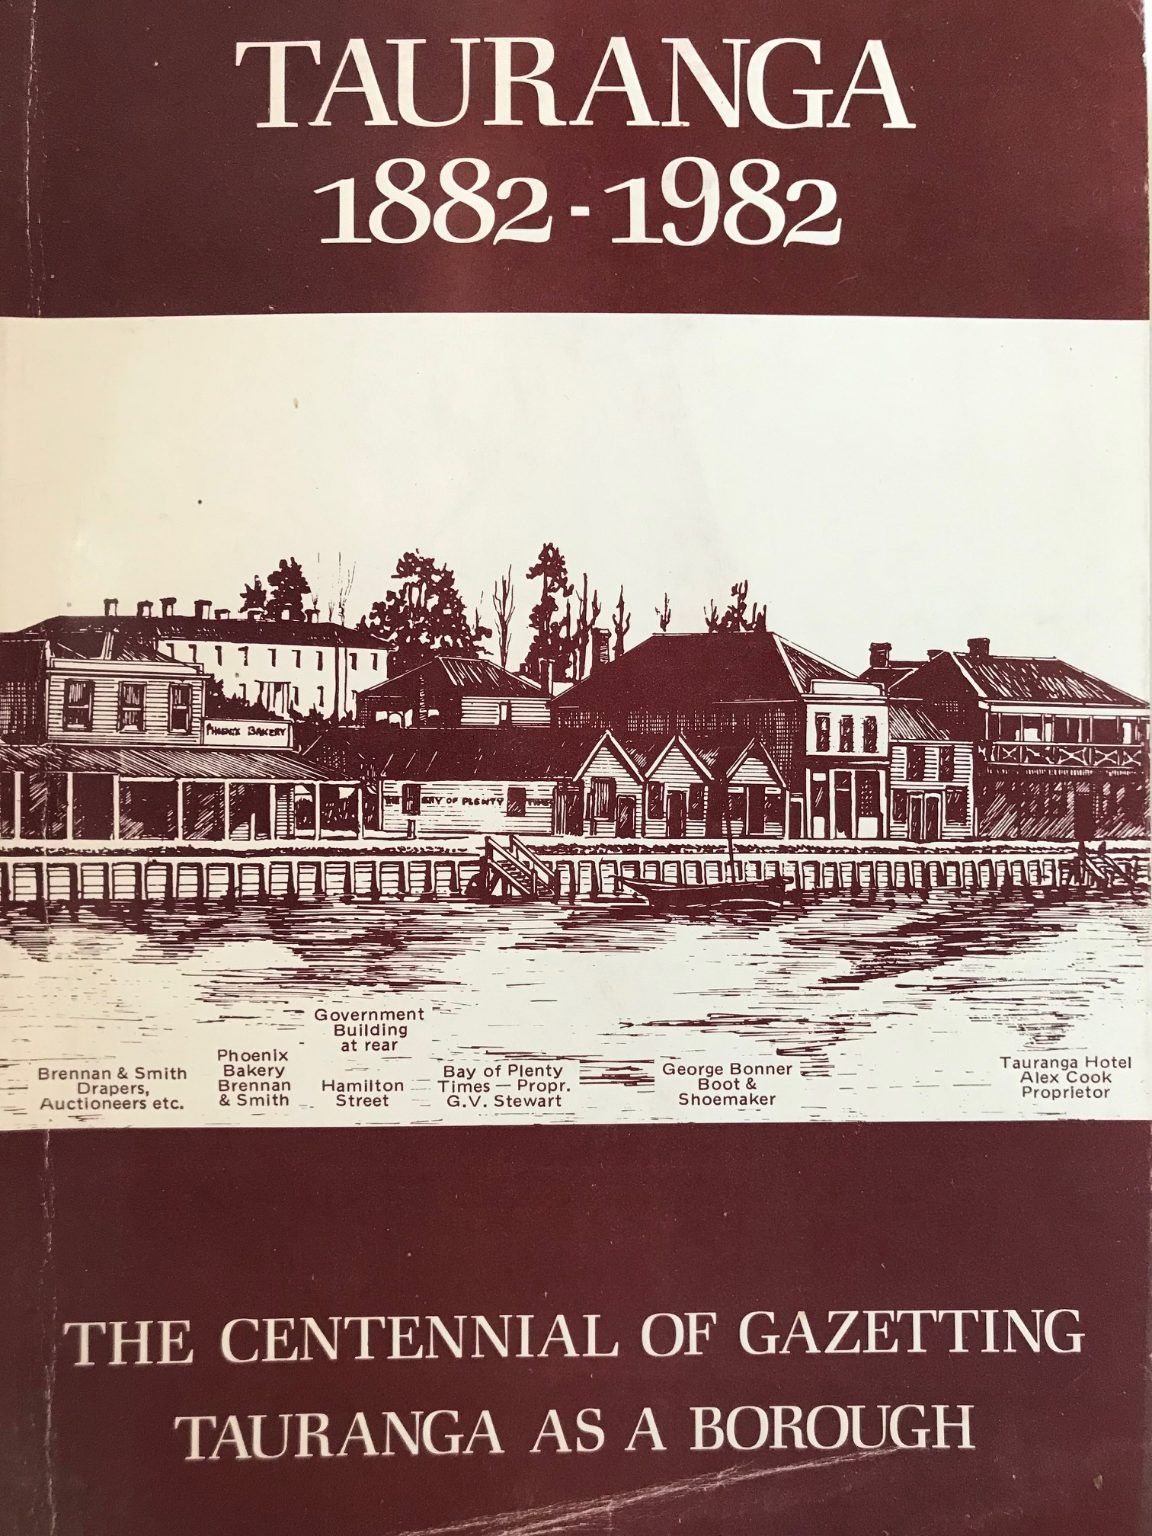 TAURANGA 1882-1982: The Centennial of Gazetting Tauranga as a Borough